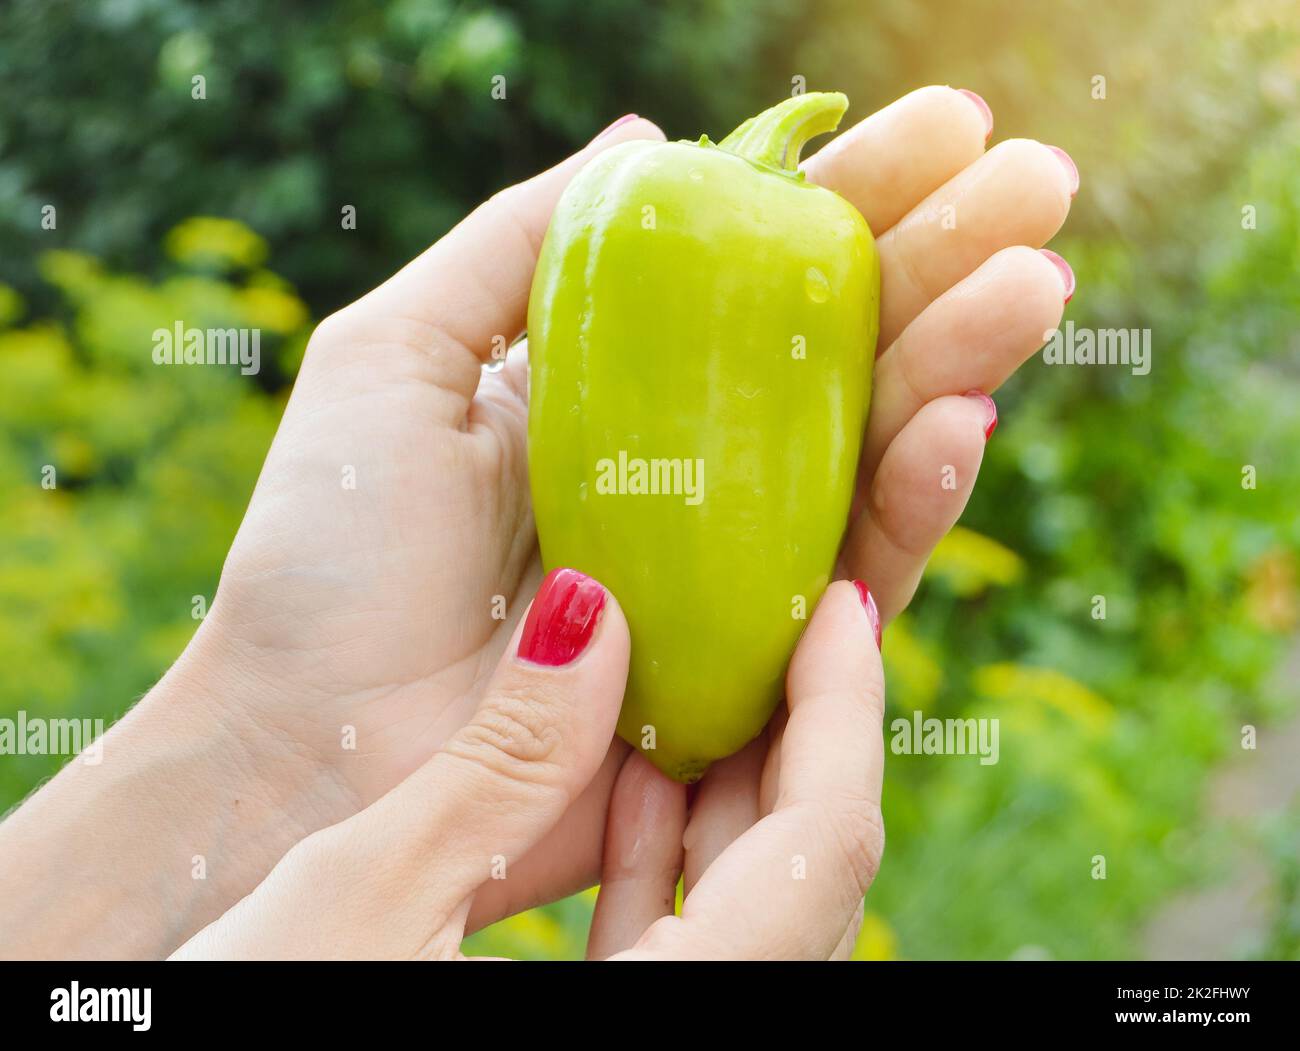 Der Begriff Garten und Landwirtschaft. Die Hände einer jungen Frau mit grünem süßem Pfeffer. Vegane vegetarische Nahrungsmittelproduktion aus eigener Produktion Stockfoto